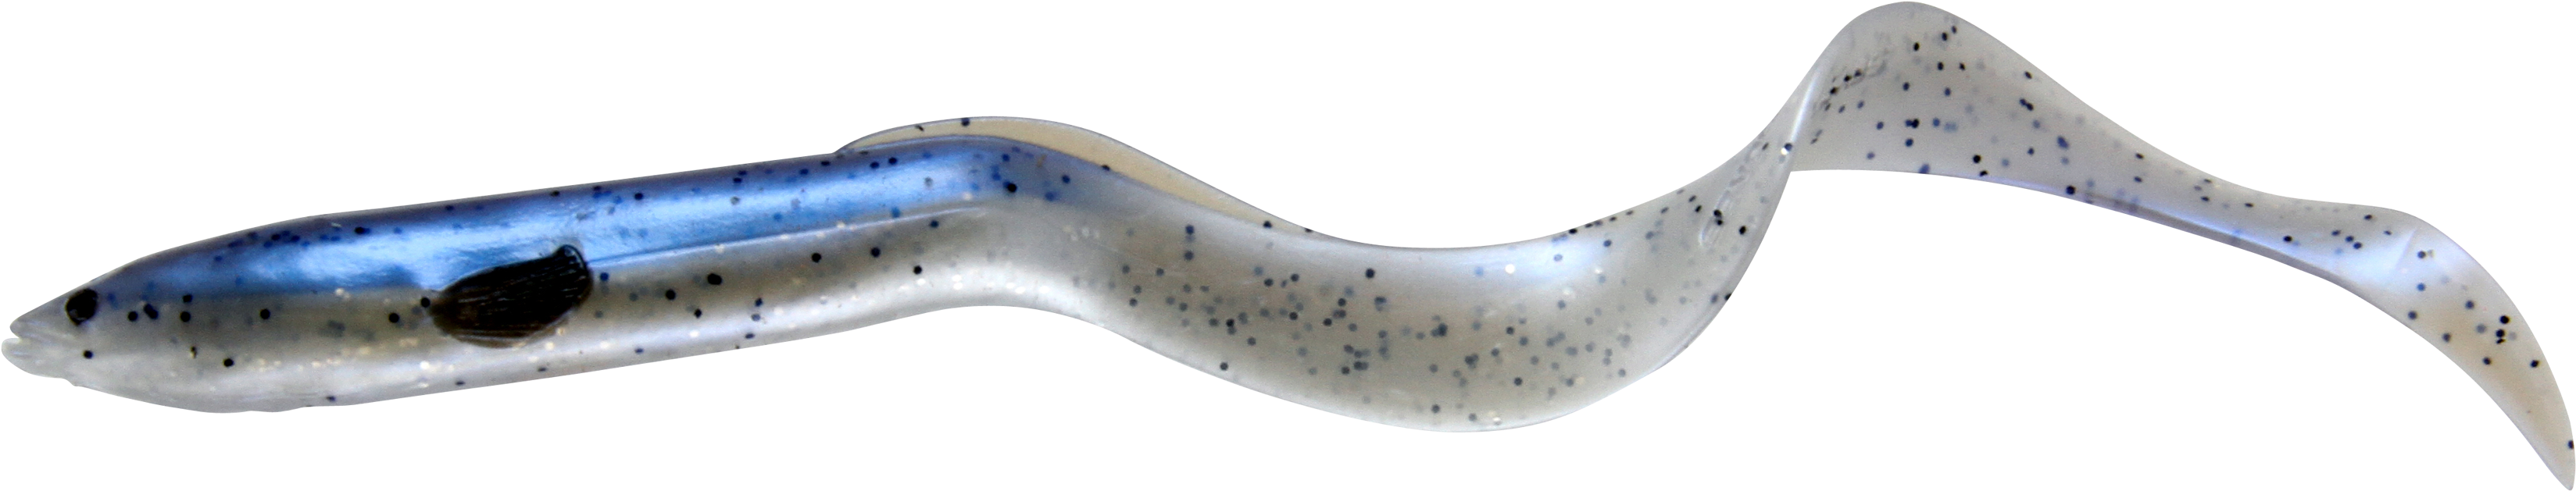 Glass Eel Transparent Background PNG image